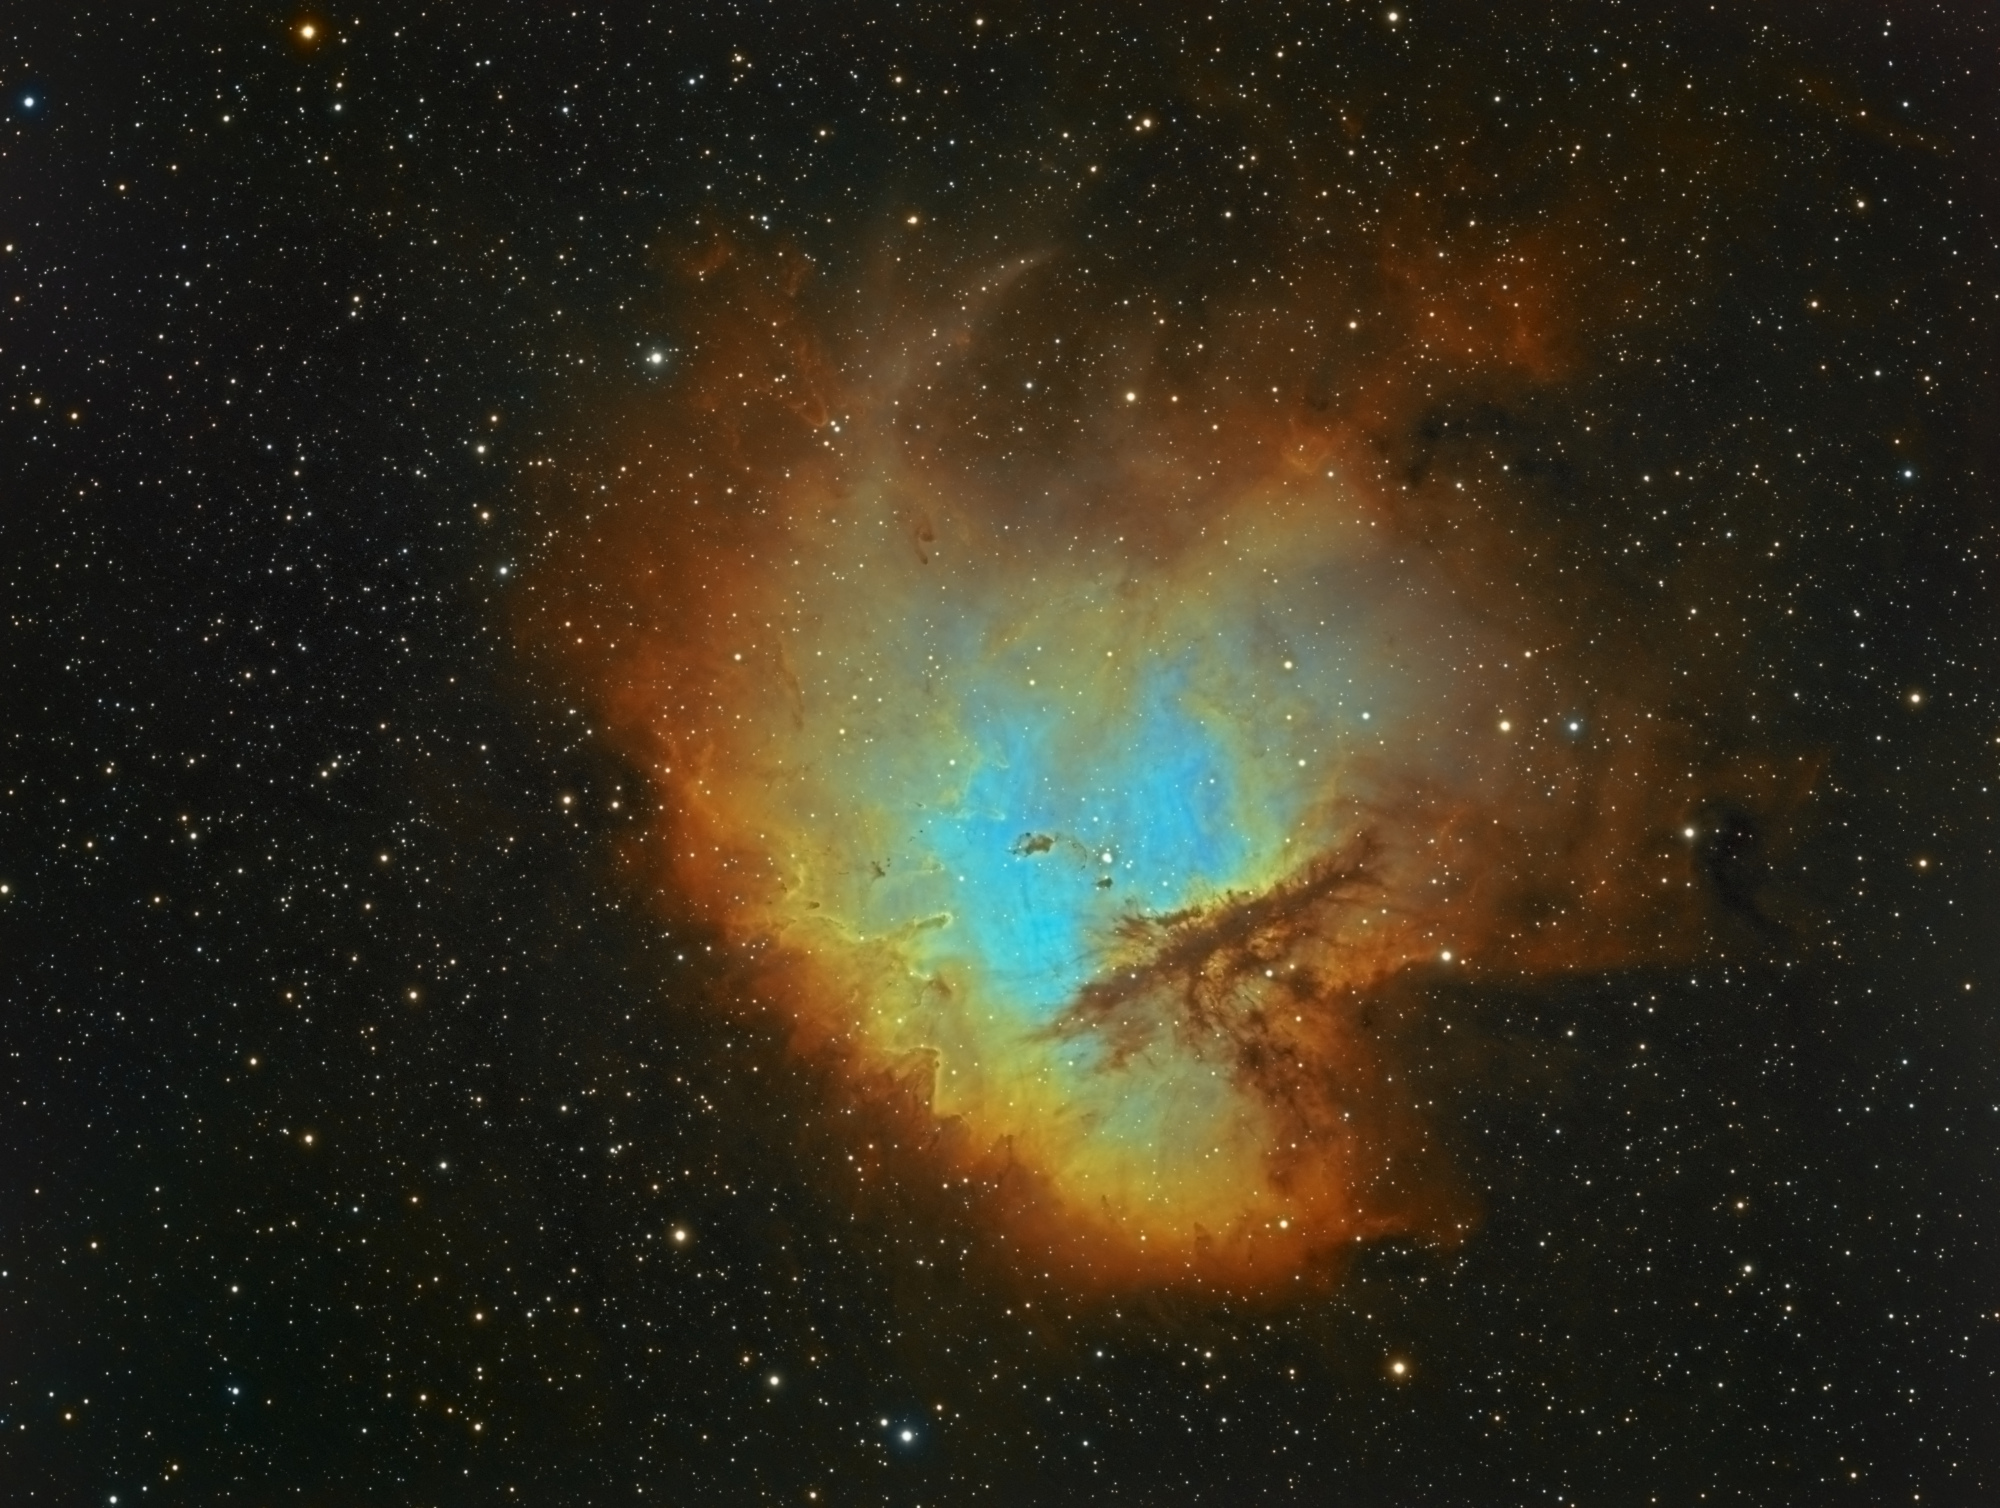 NGC281_SHO_V2.thumb.jpg.afa29f6a8d0c67027c342de54083a81b.jpg